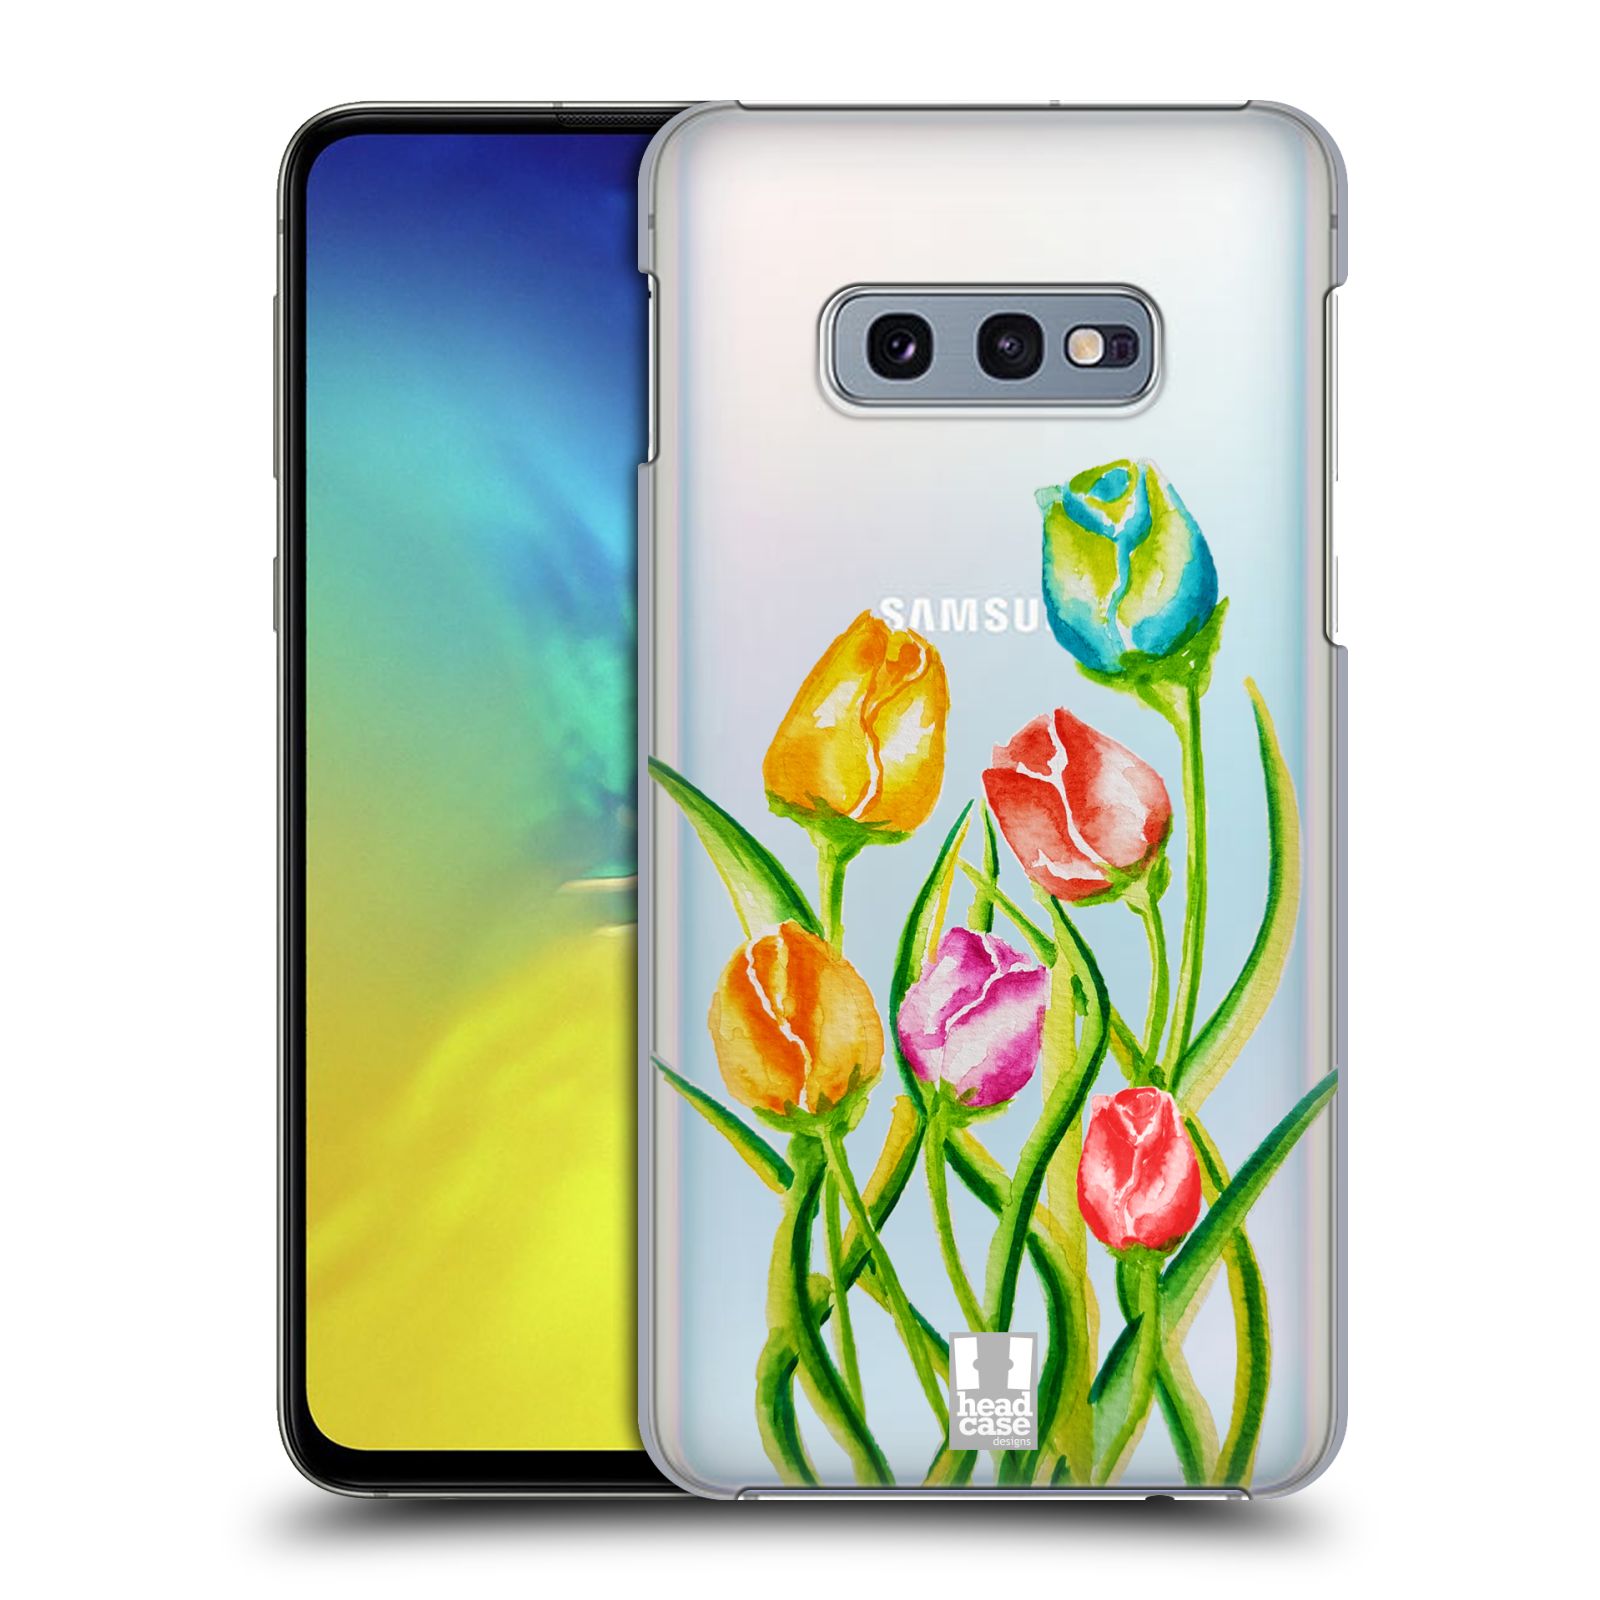 Pouzdro na mobil Samsung Galaxy S10e - HEAD CASE - Květina Tulipán vodní barvy